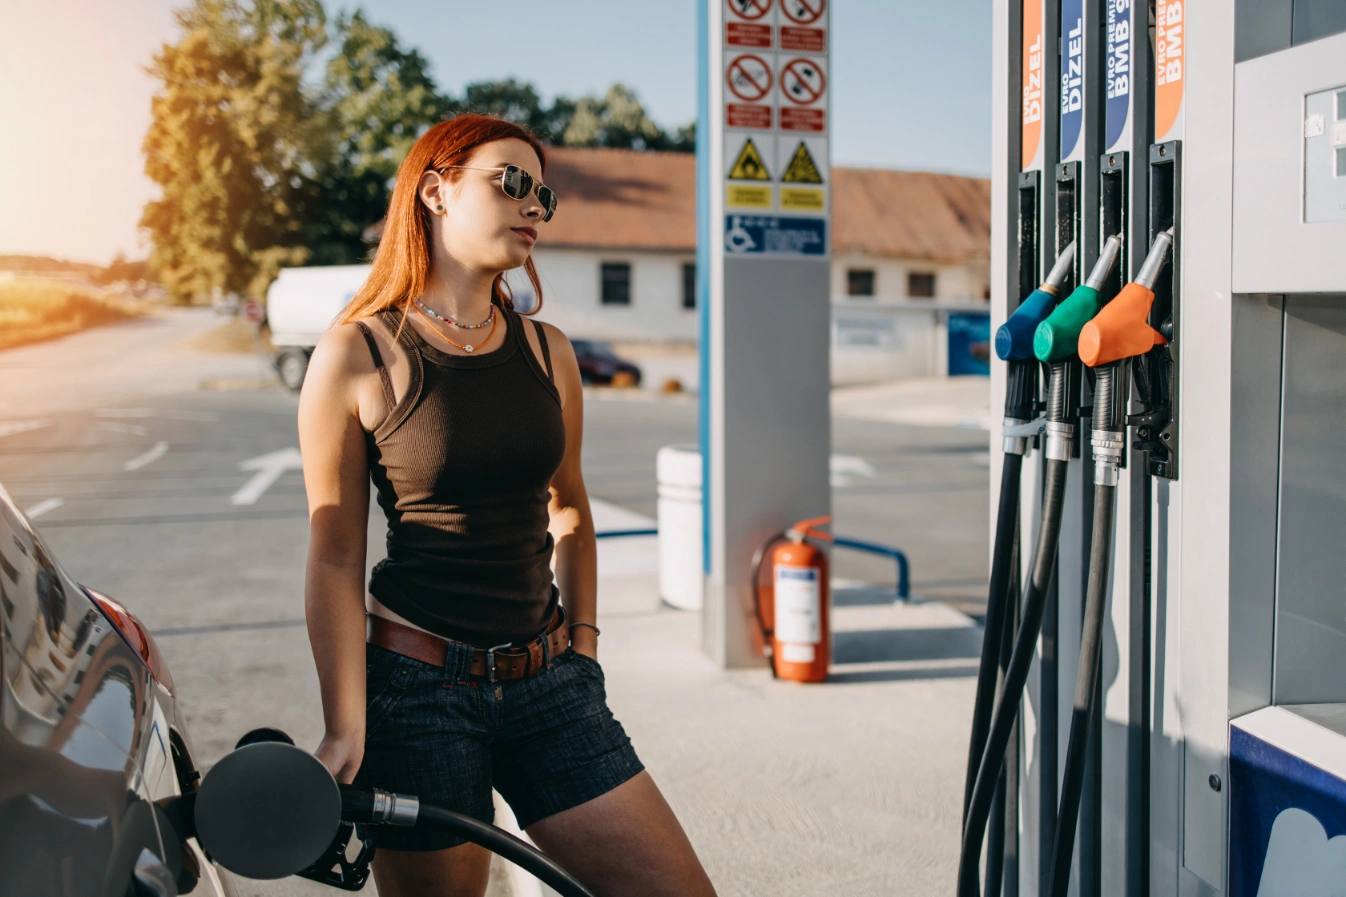 gas stations that cash checks